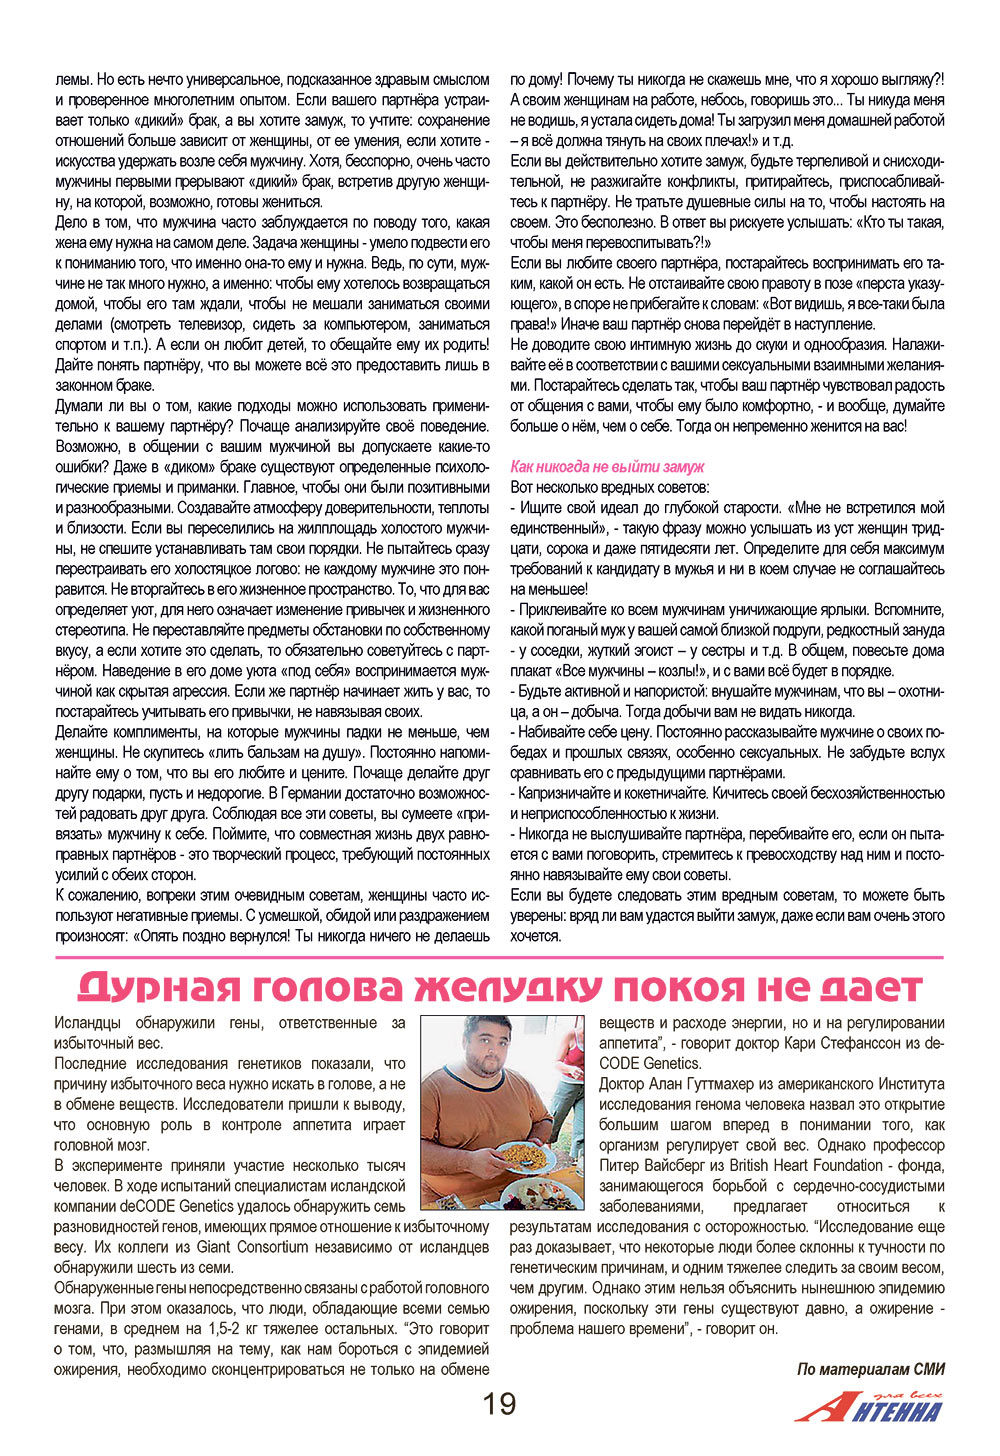 Антенна, журнал. 2009 №1 стр.19